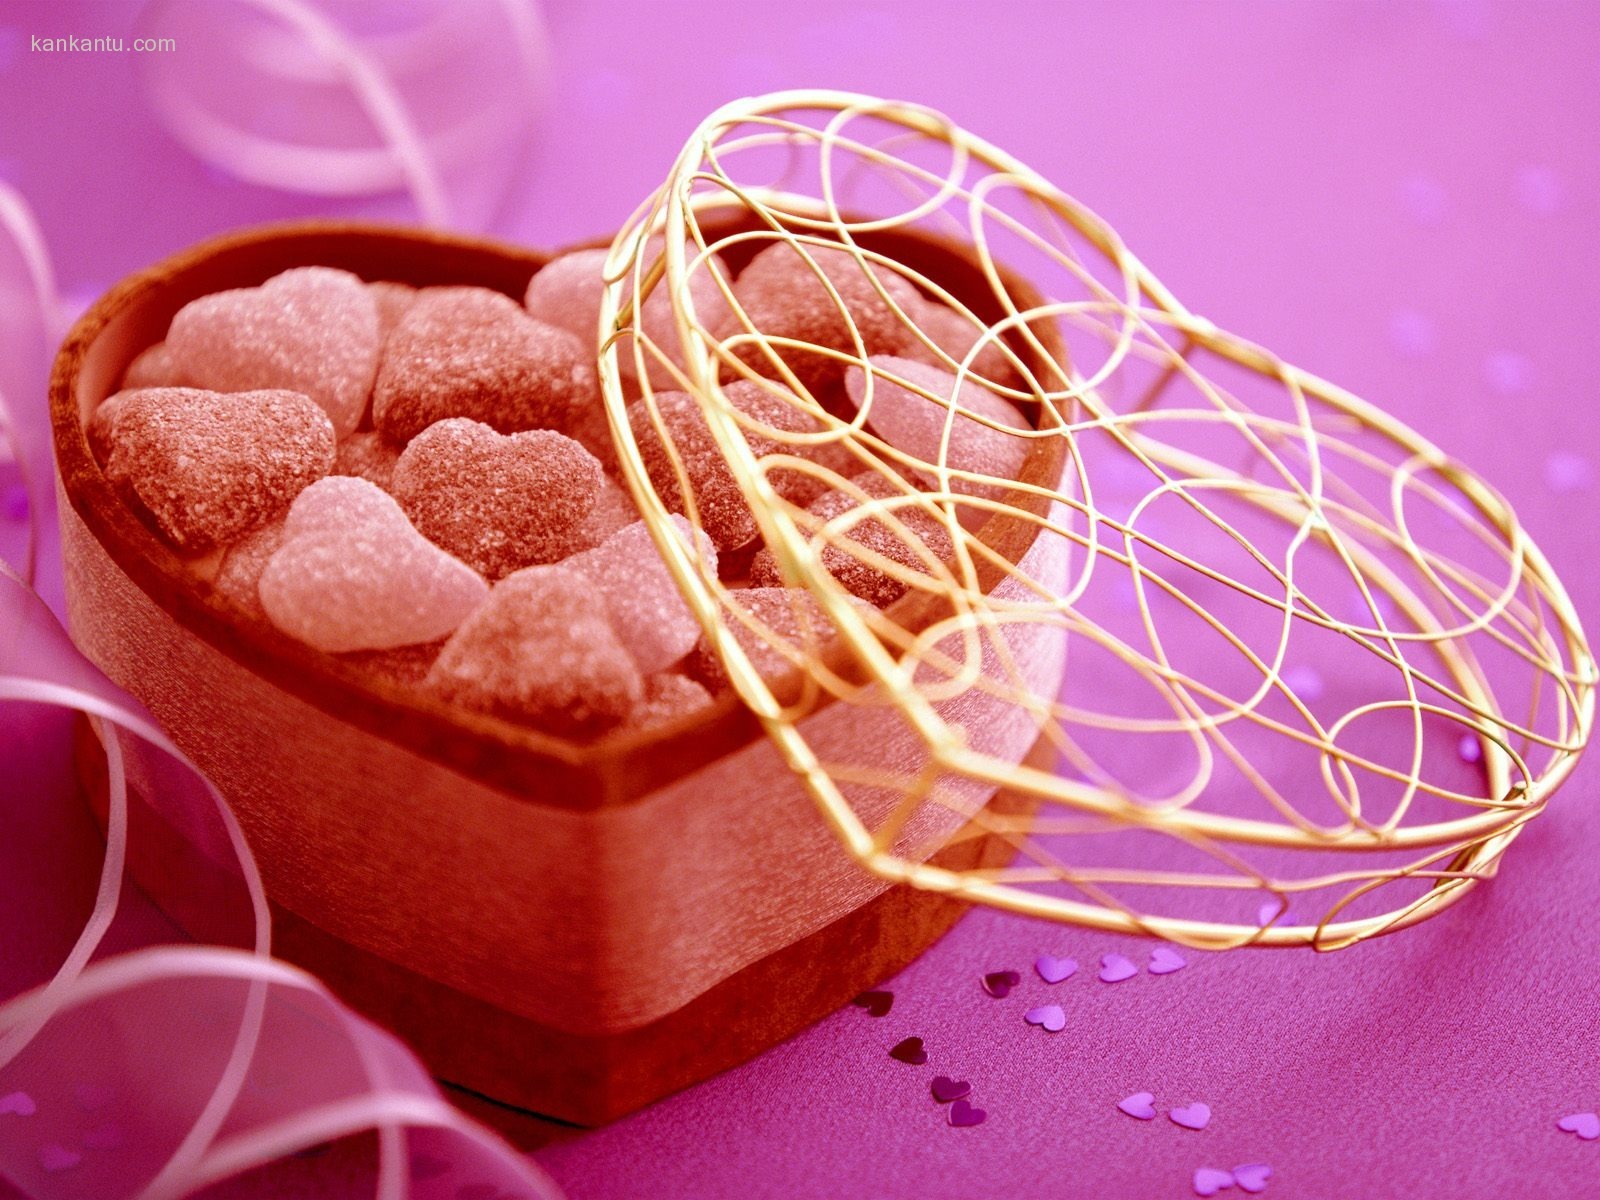 씻을 수없는 발렌타인 데이 초콜릿 #1 - 1600x1200